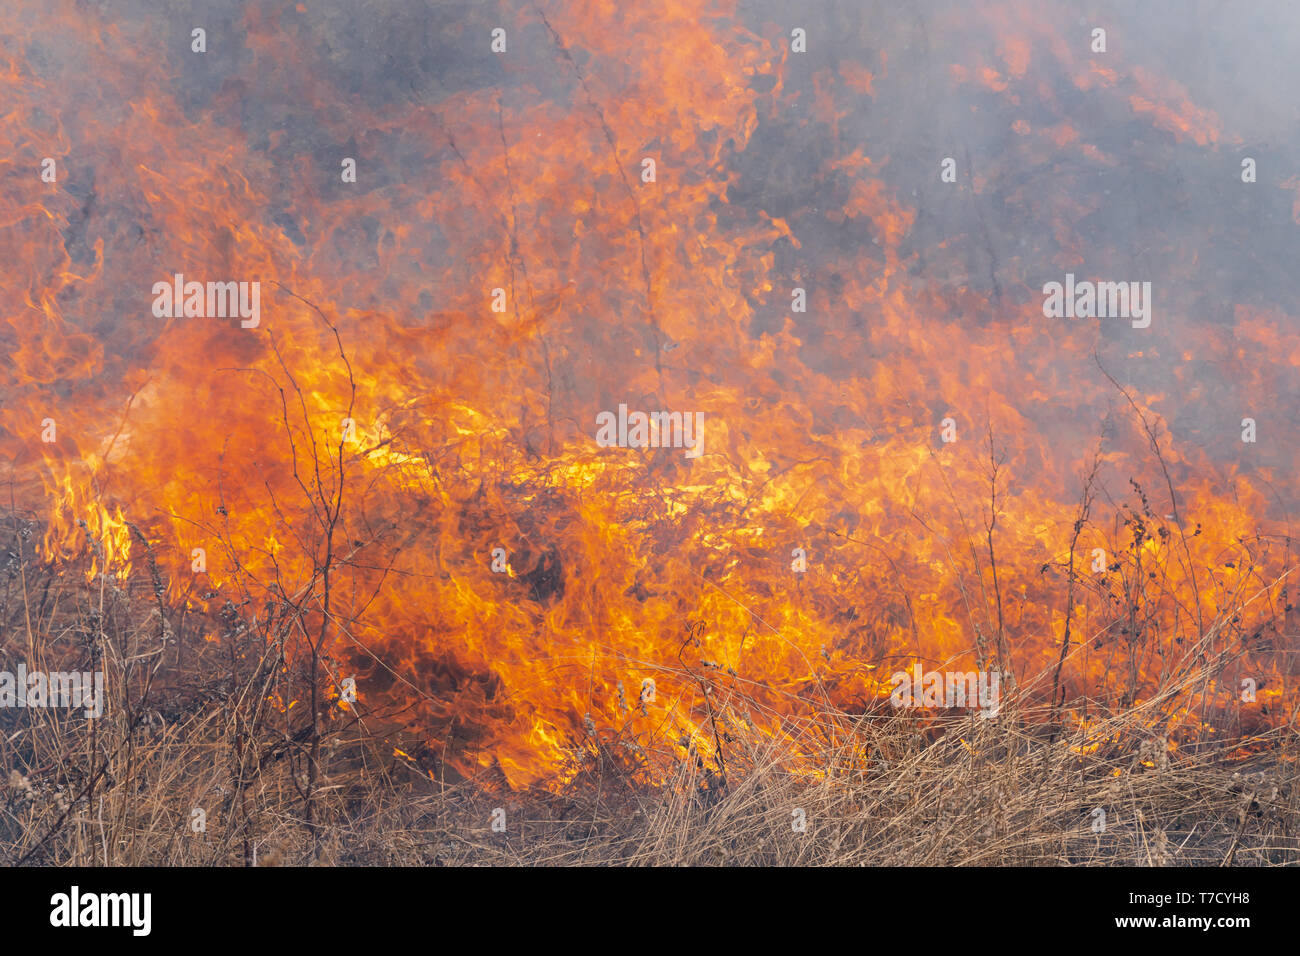 Rosso fiamma di fuoco con diverse figure sullo sfondo la masterizzazione di erba secca nella foresta di primavera. Soft focus blur dal forte wildfire. Foto Stock